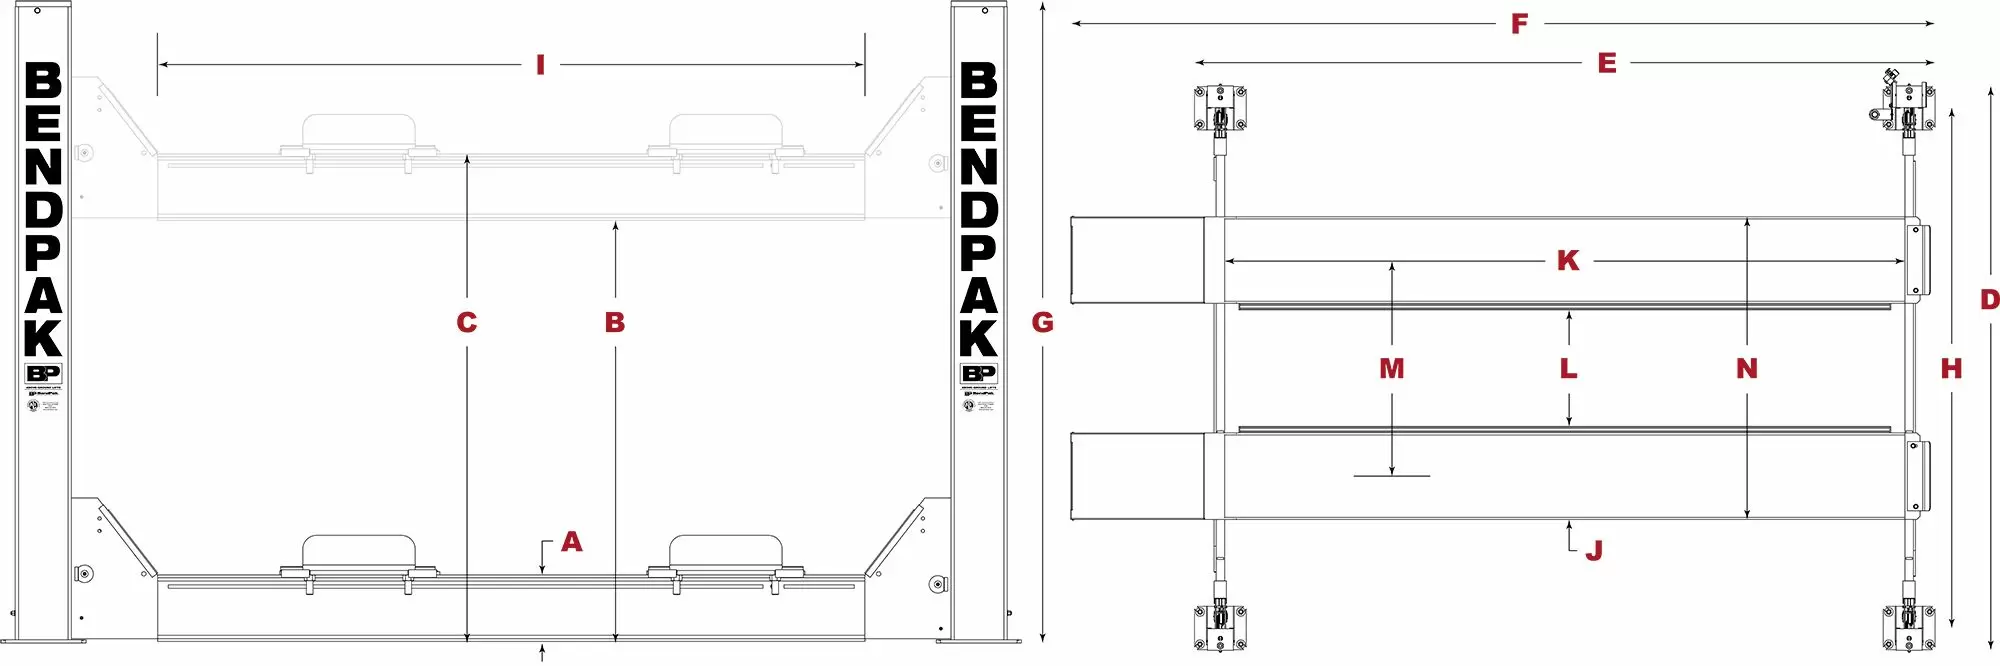 BendPak-Heavy-Duty-Four-Post-Lift-Specifications-Diagram_jpg-3.webp